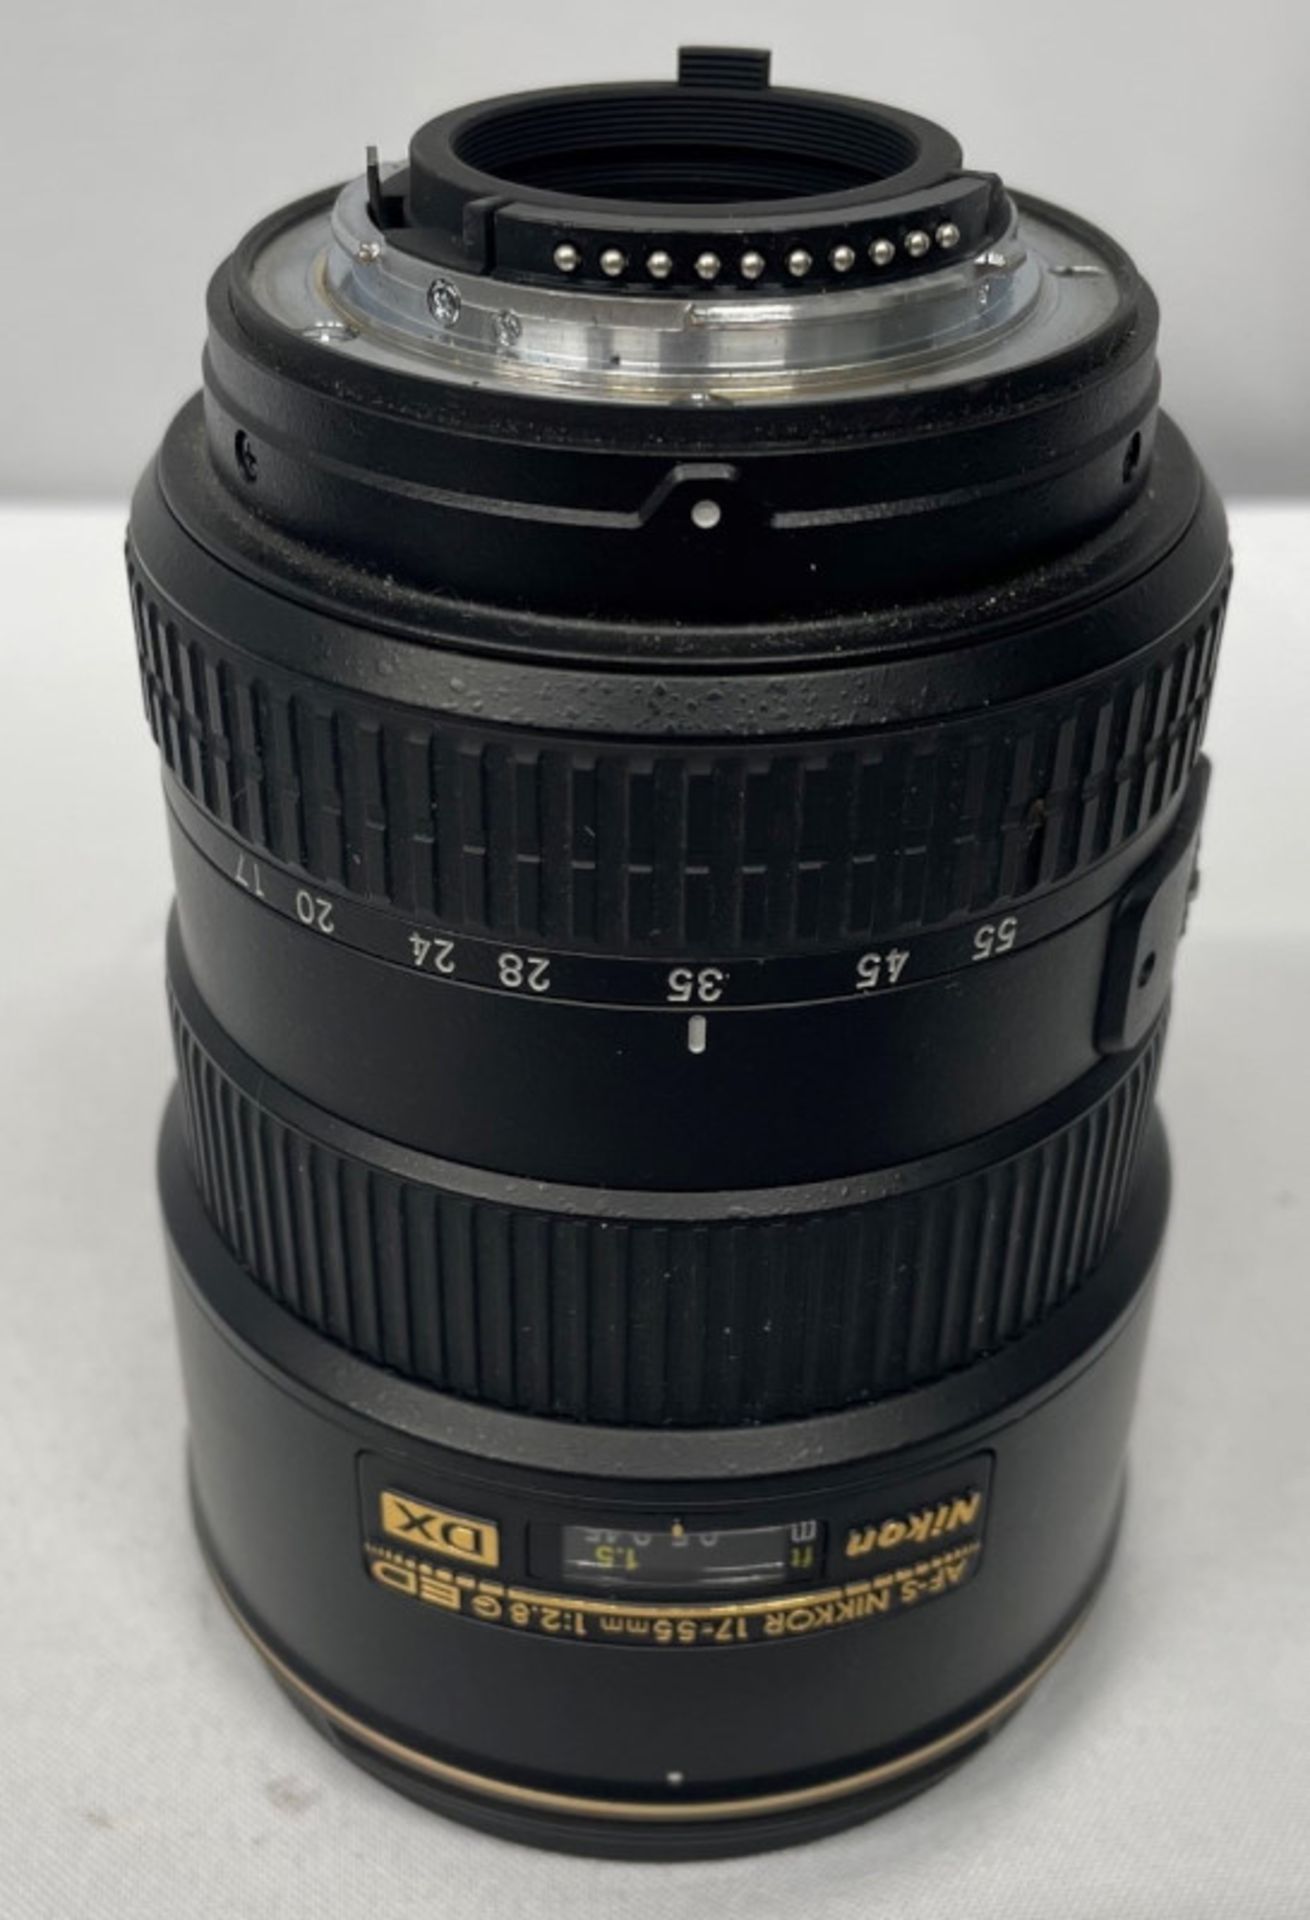 Nikon DX AF-S Nikkor 17-55mm - 1:2.8G ED Lens - Serial No. 332054 with HOYA 77mm UV(O) Filter - Image 2 of 8